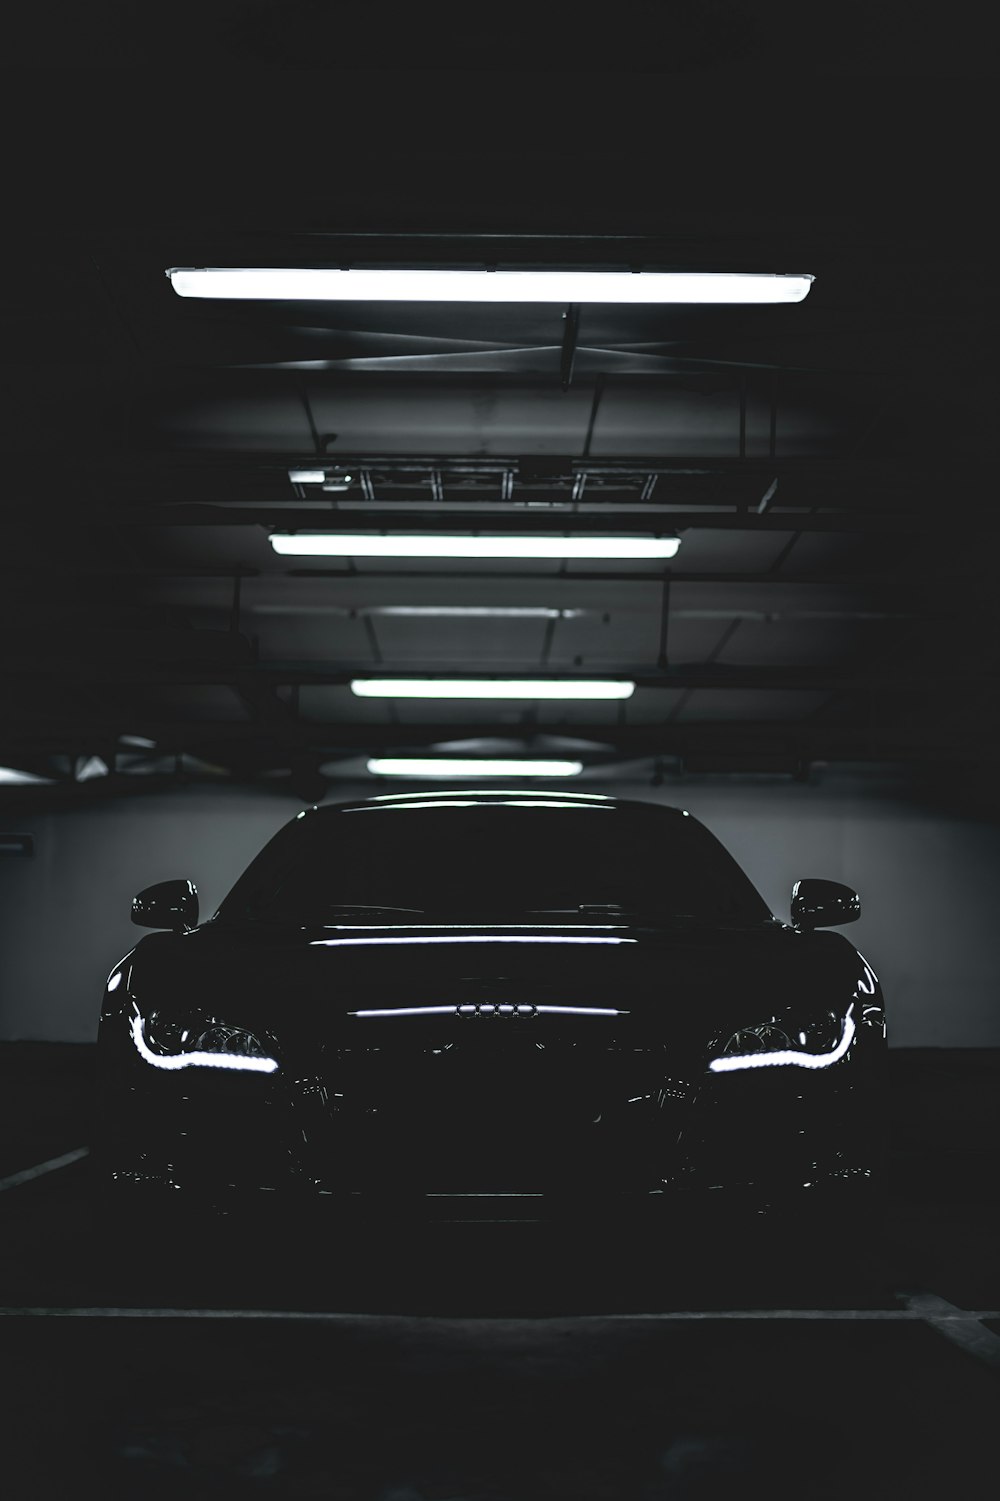 Xem những hình ảnh ô tô màu đen đẹp mắt sẽ mang đến cho bạn sự sang trọng và đẳng cấp. Với sự kết hợp tinh tế giữa màu đen và các chi tiết kim loại, những bức ảnh đầy lôi cuốn này sẽ khiến bạn say đắm và thèm muốn sở hữu ngay cho mình một chiếc xe tuyệt đẹp này.